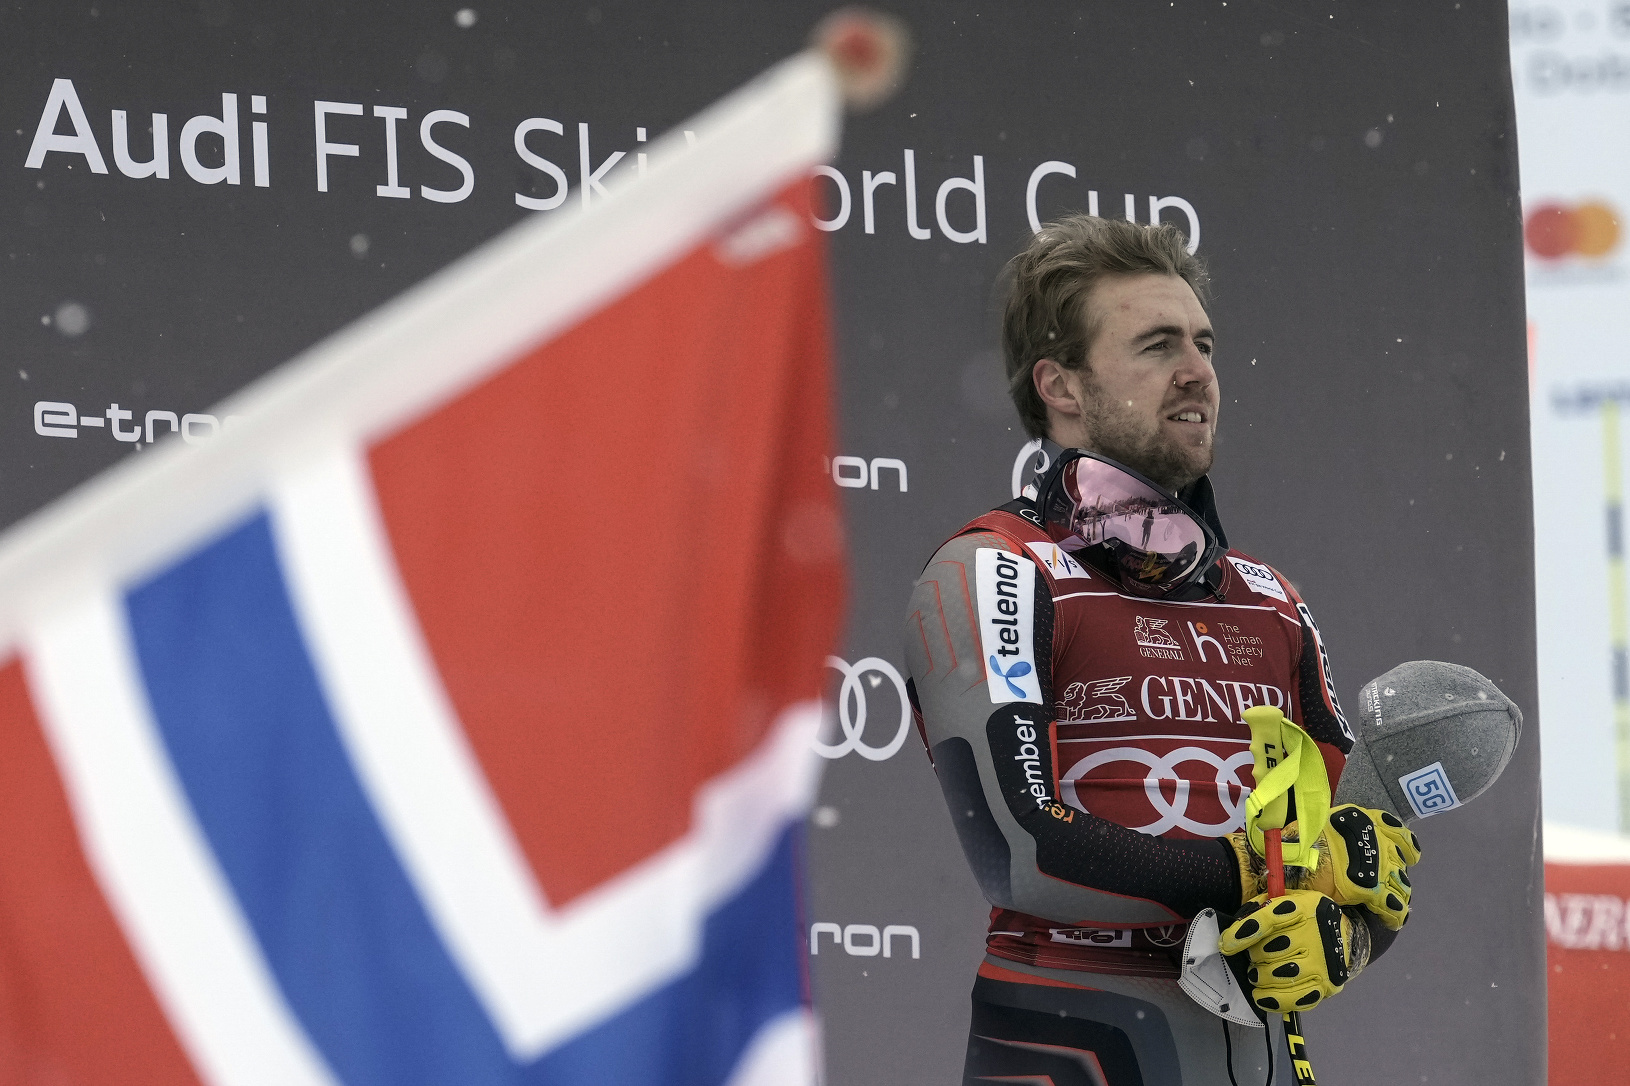 Nórsky lyžiar Aleksander Aamodt